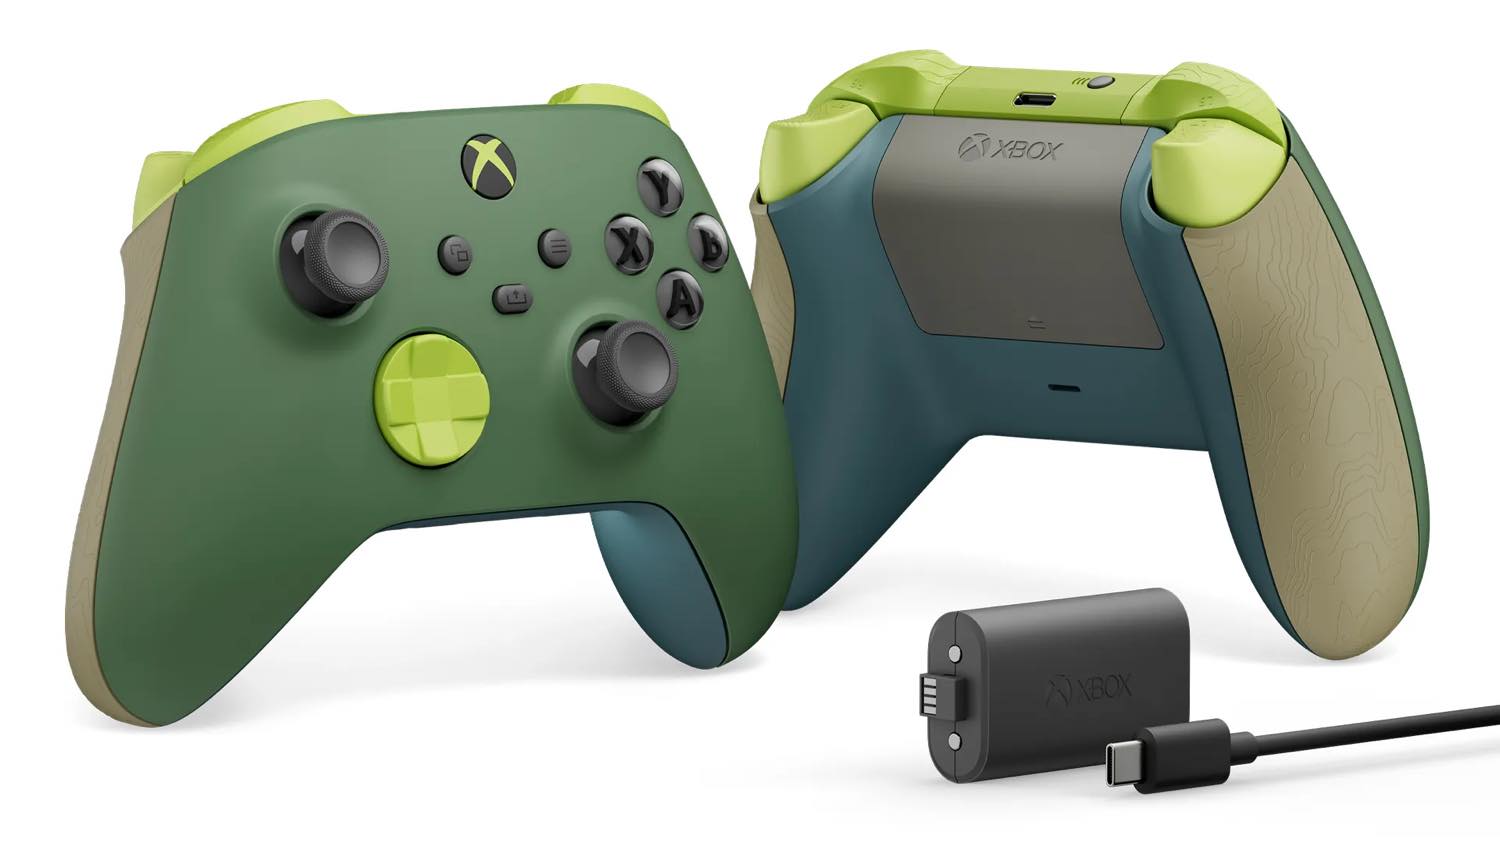 ｢Xbox ワイヤレスコントローラー｣の環境に配慮した新モデル｢リミックス特別エディション｣は本日発売